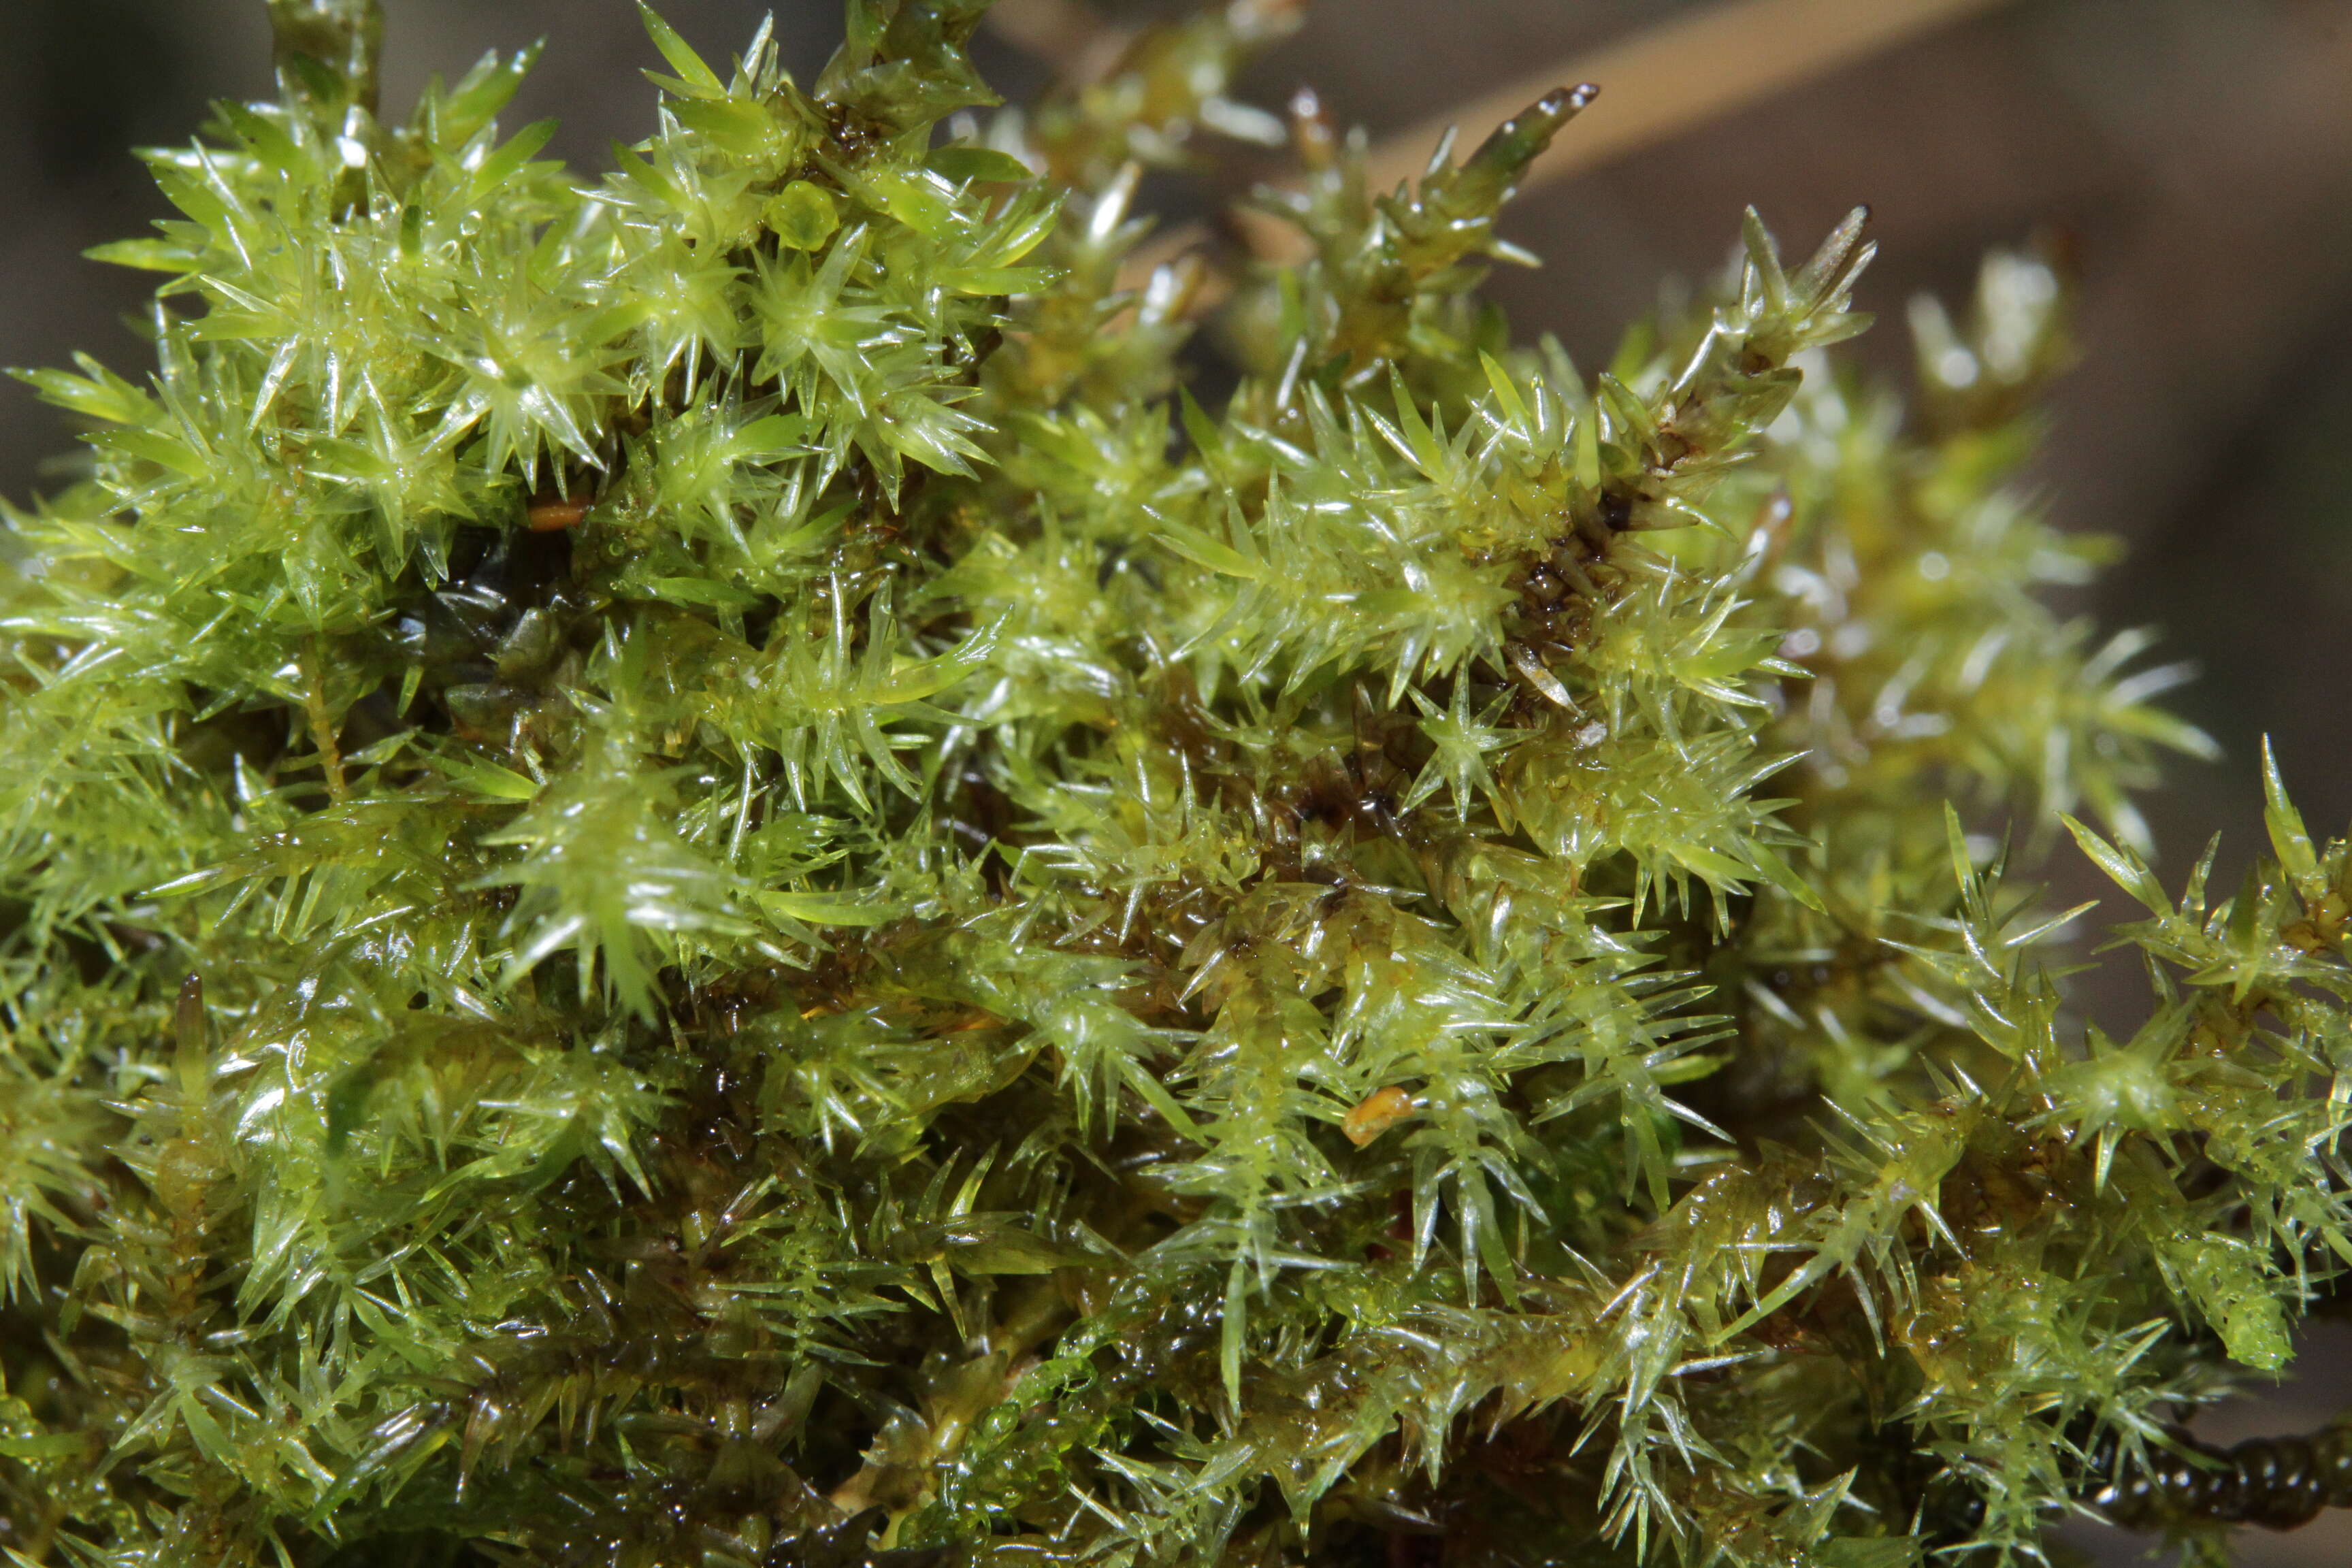 Image of giant calliergon moss